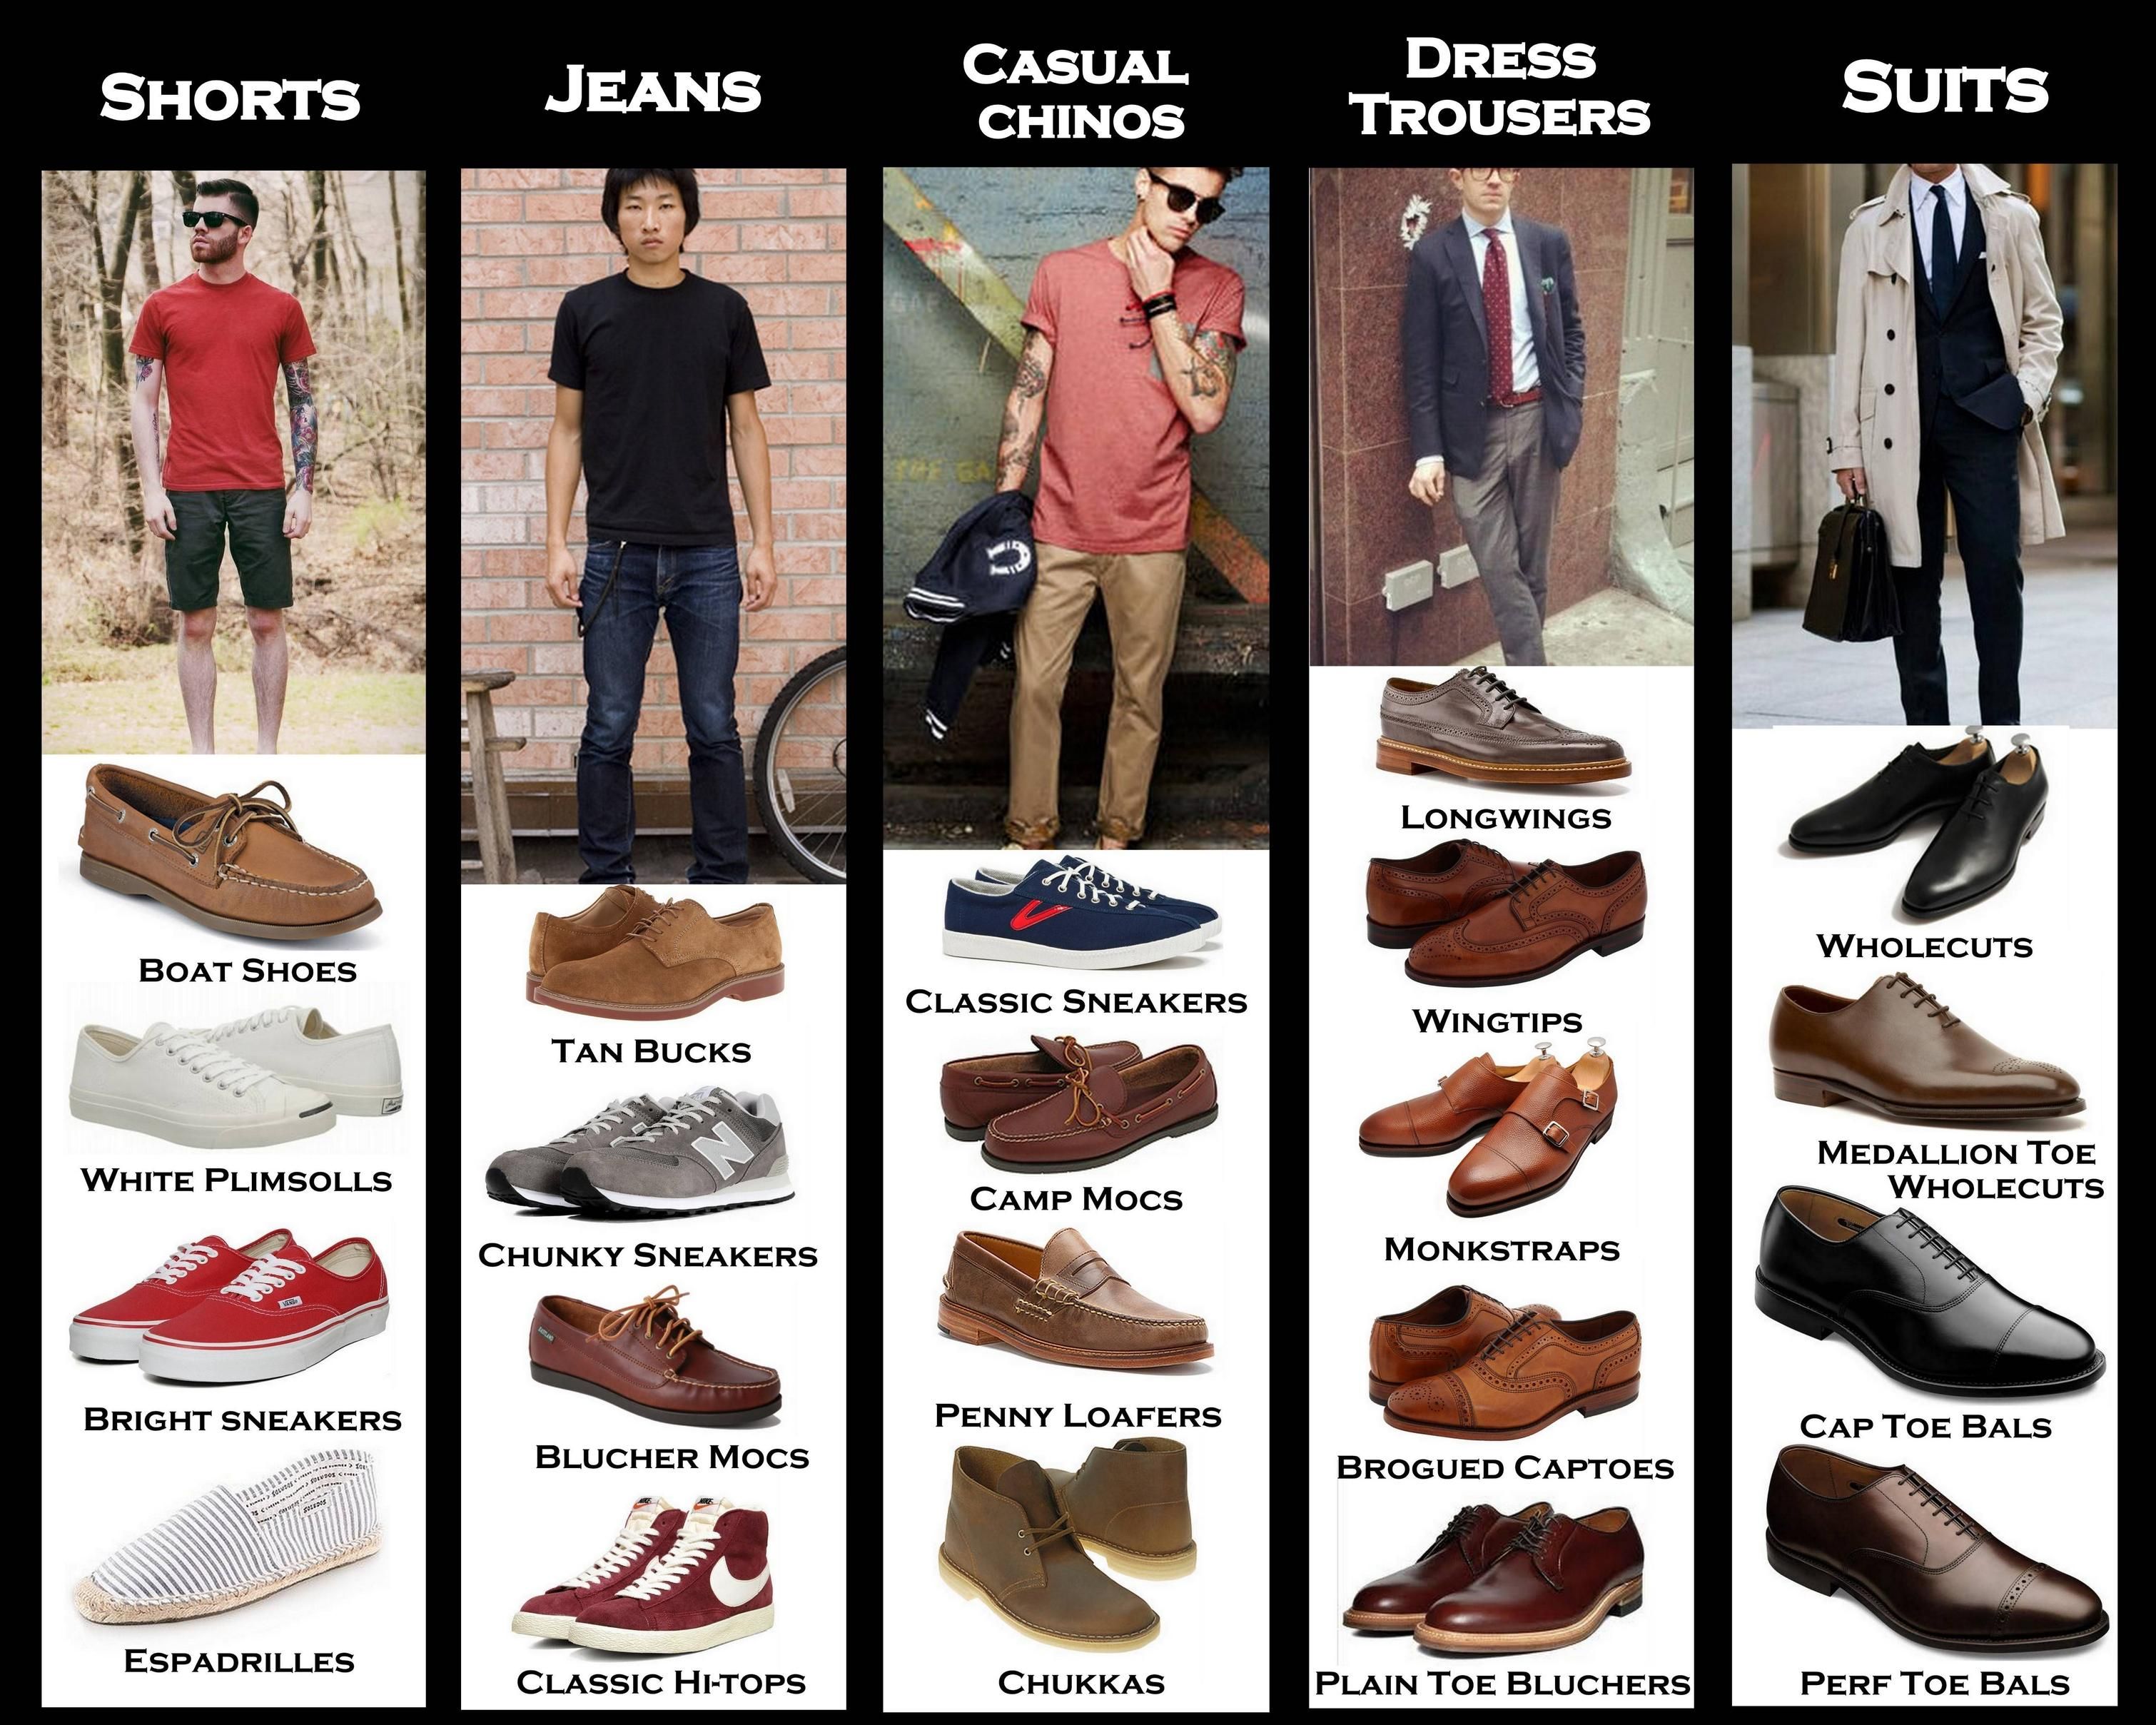 Название мужских ботинок. Название мужской обуви. Формы мужской обуви. Мужская обувь названия моделей. Виды мужской обуви названия.